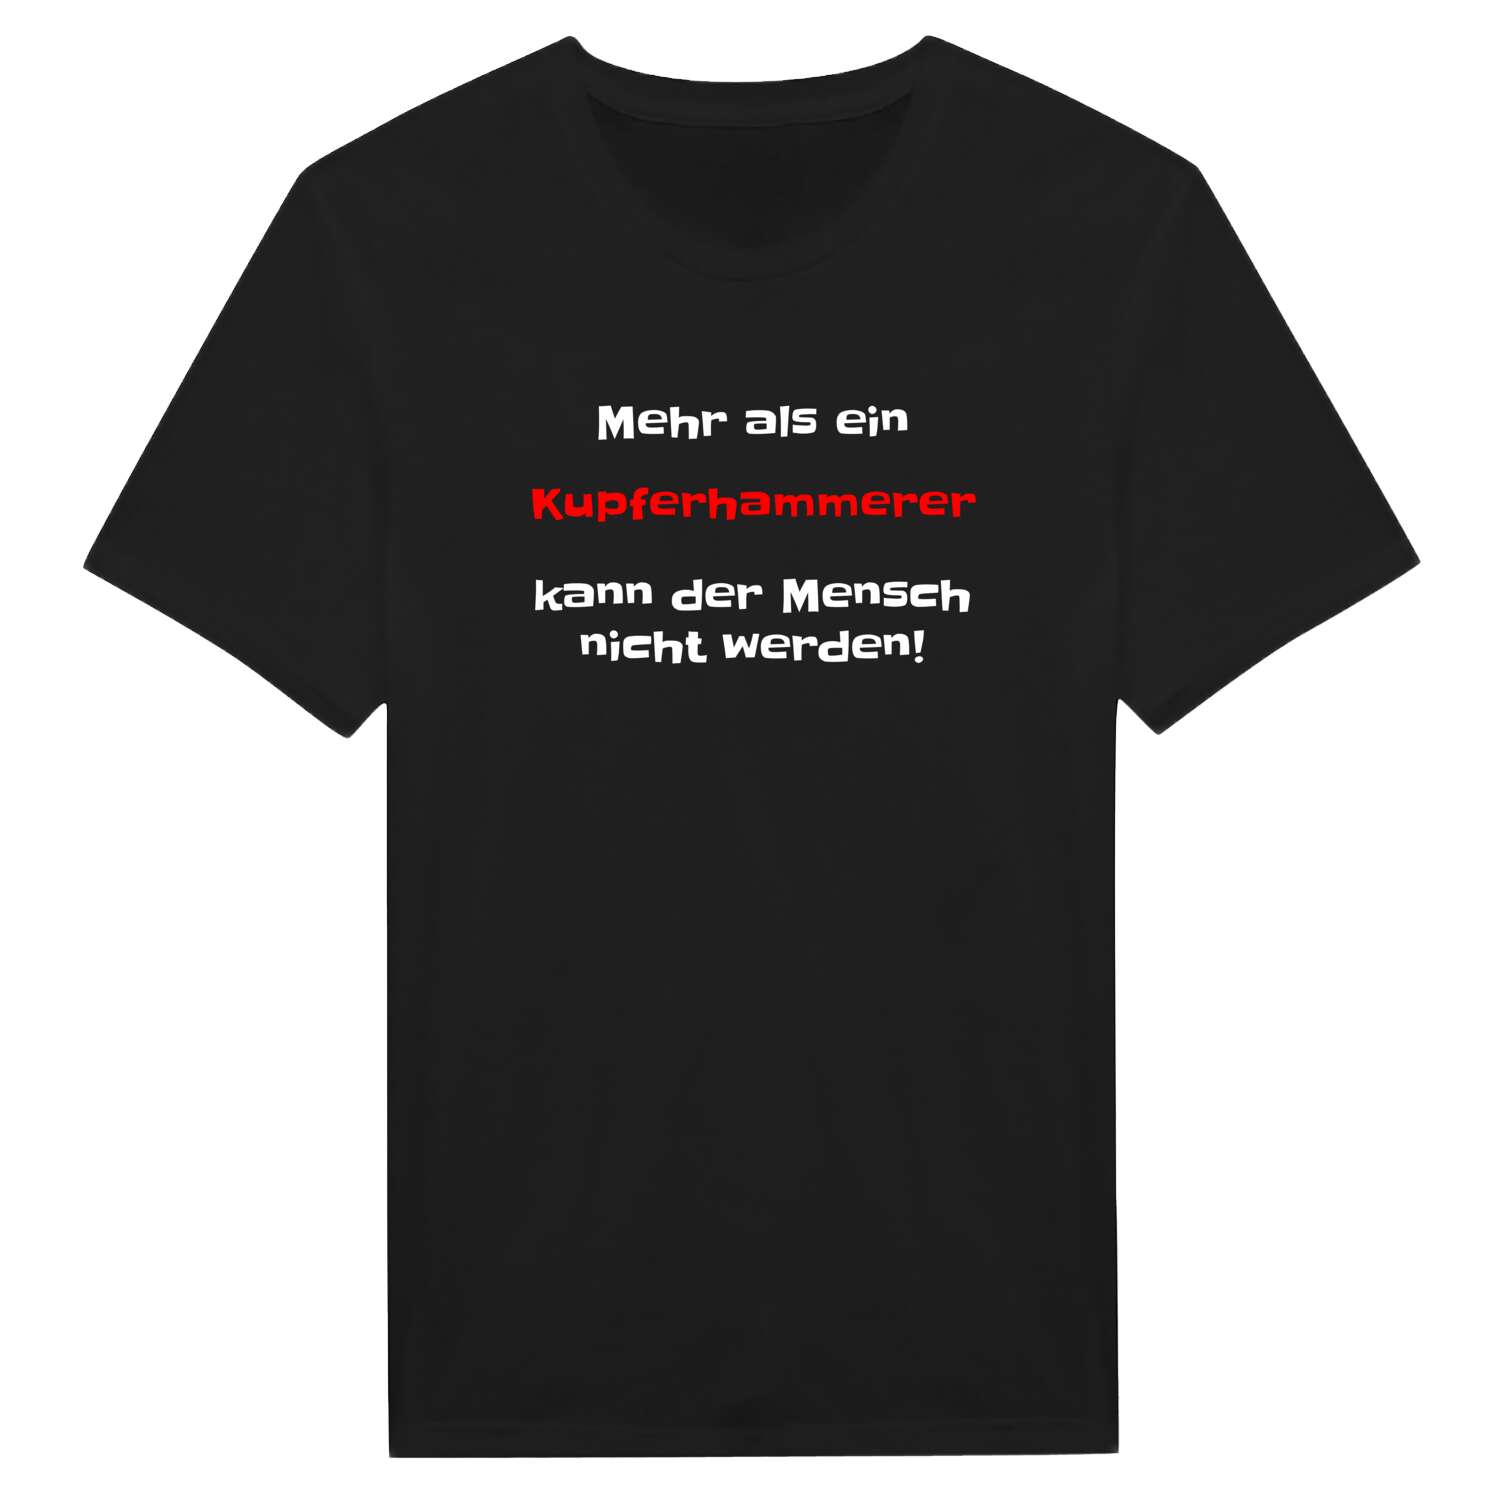 Kupferhammer T-Shirt »Mehr als ein«